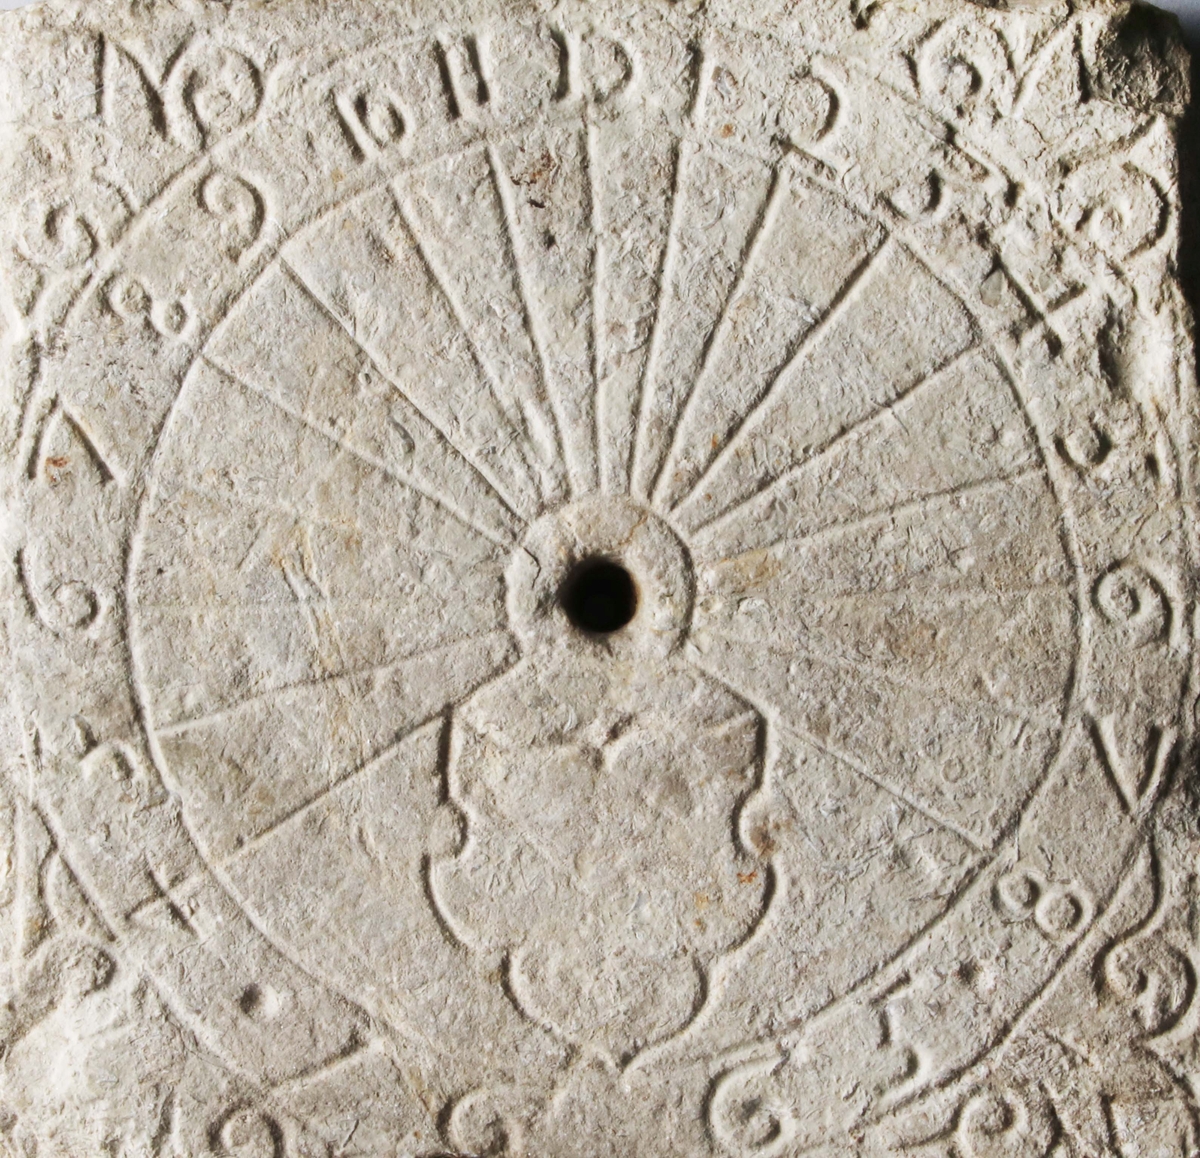 Sandsten; Kvadratisk; rund sifferkrans, i hörnen liljor. Ett hål, under detta en sköld, där nedanför 1665. (Gunnar Blomgren)

Funktion: Tidvisare